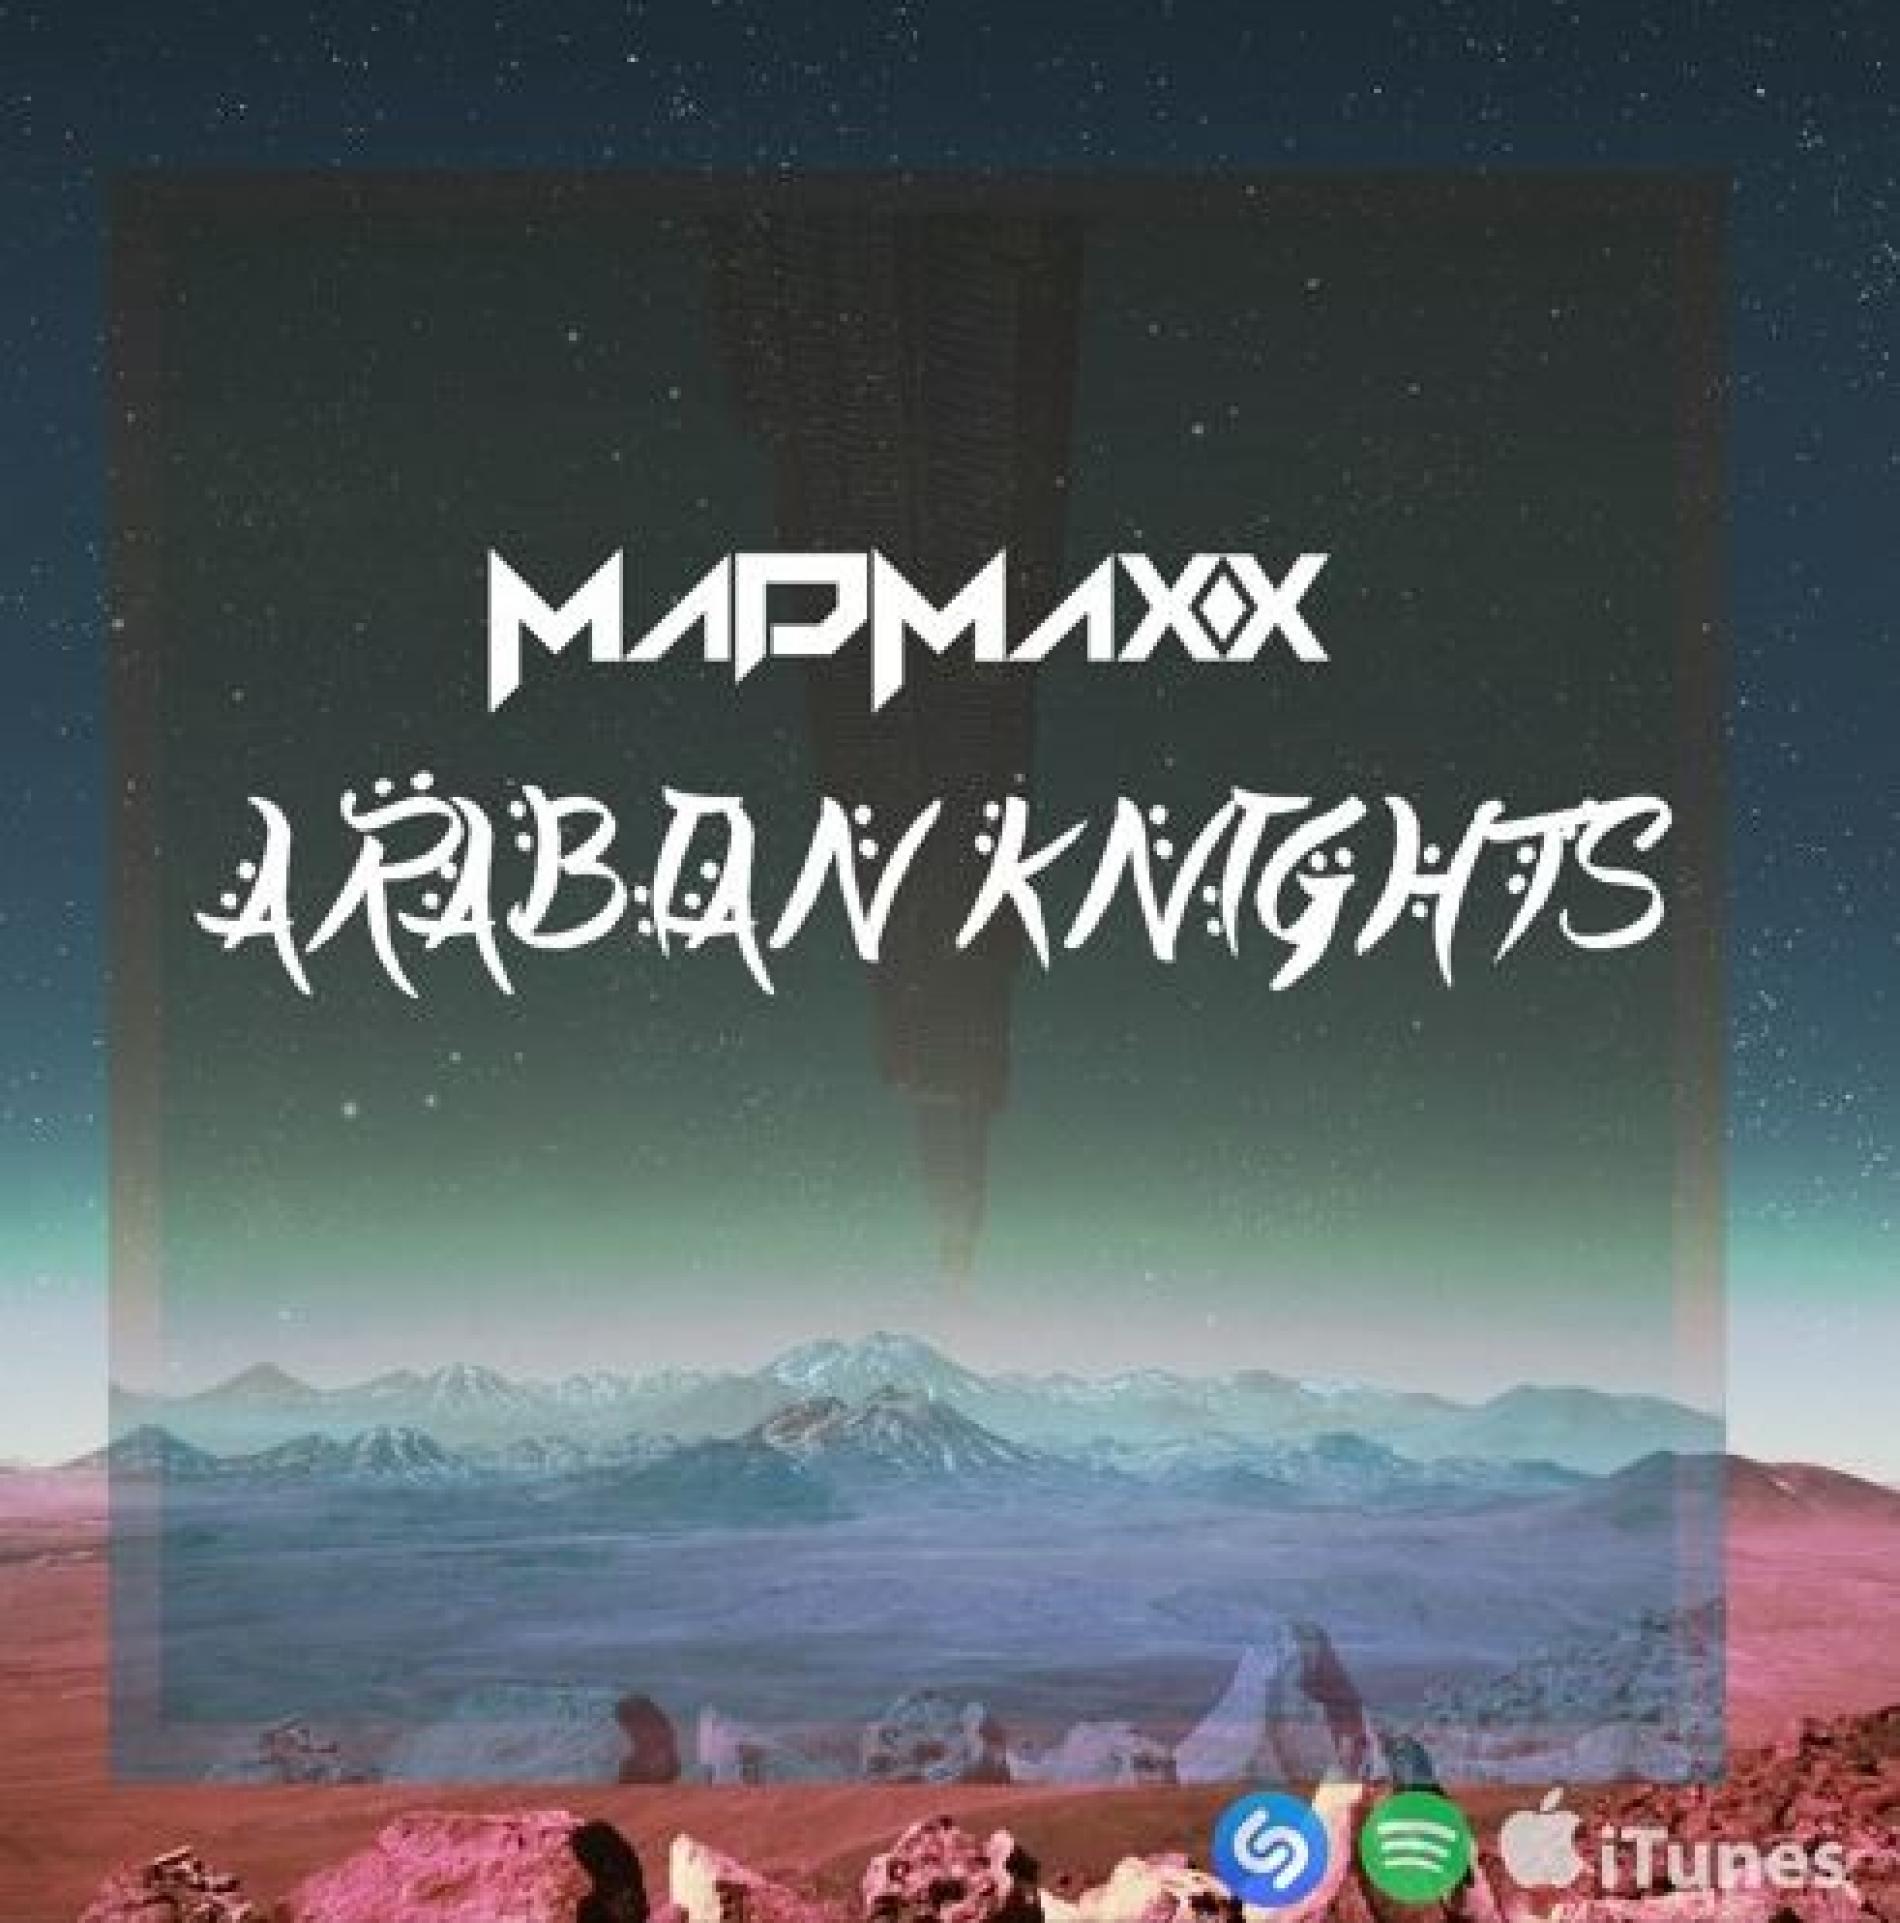 Madmaxx – Arabian Knights